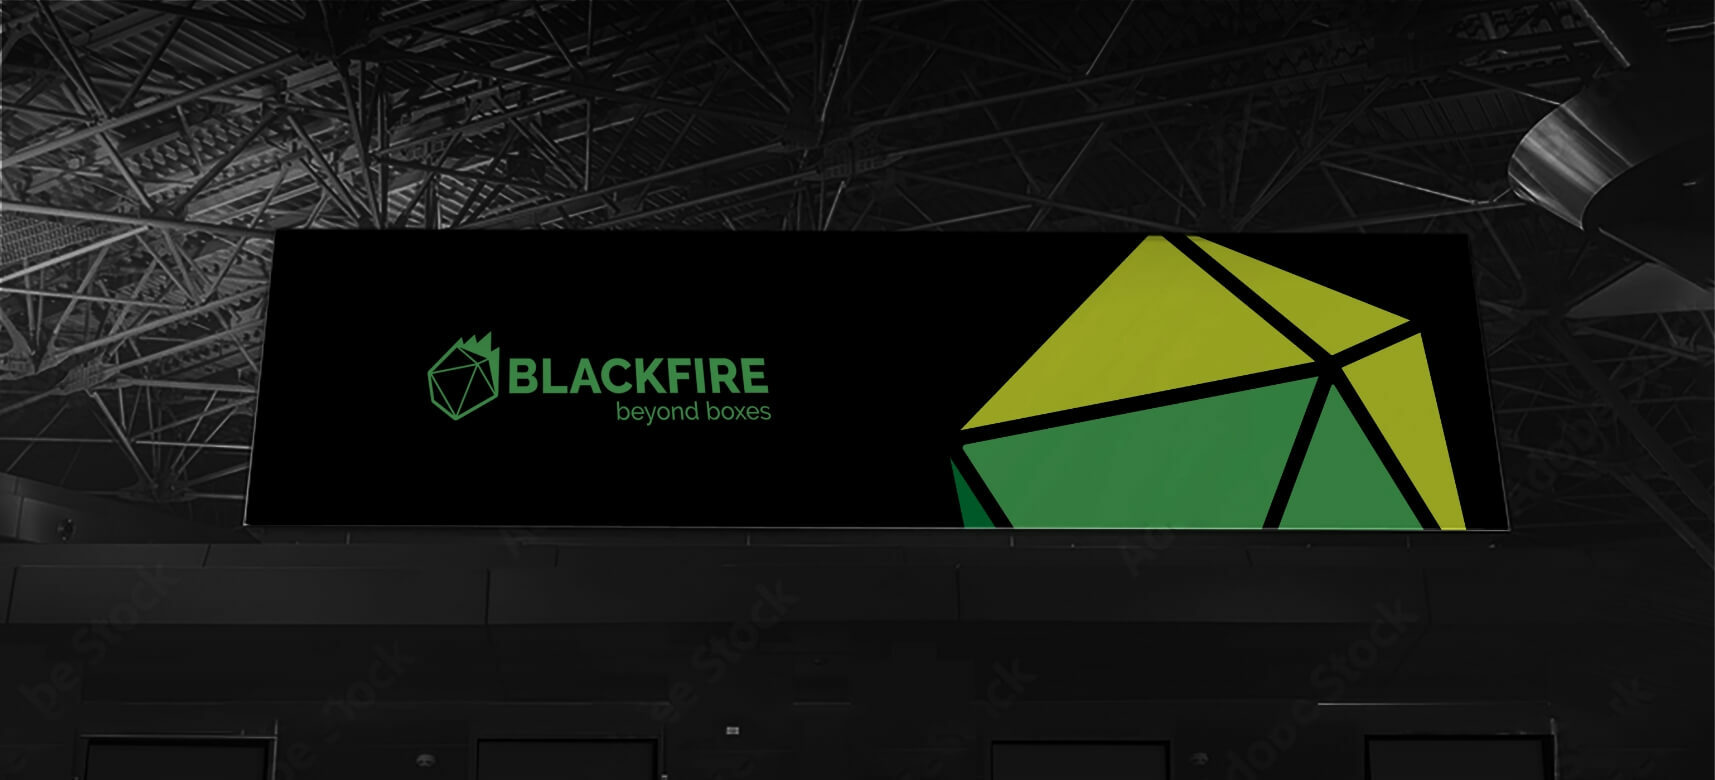 Blackfire Banner Brand